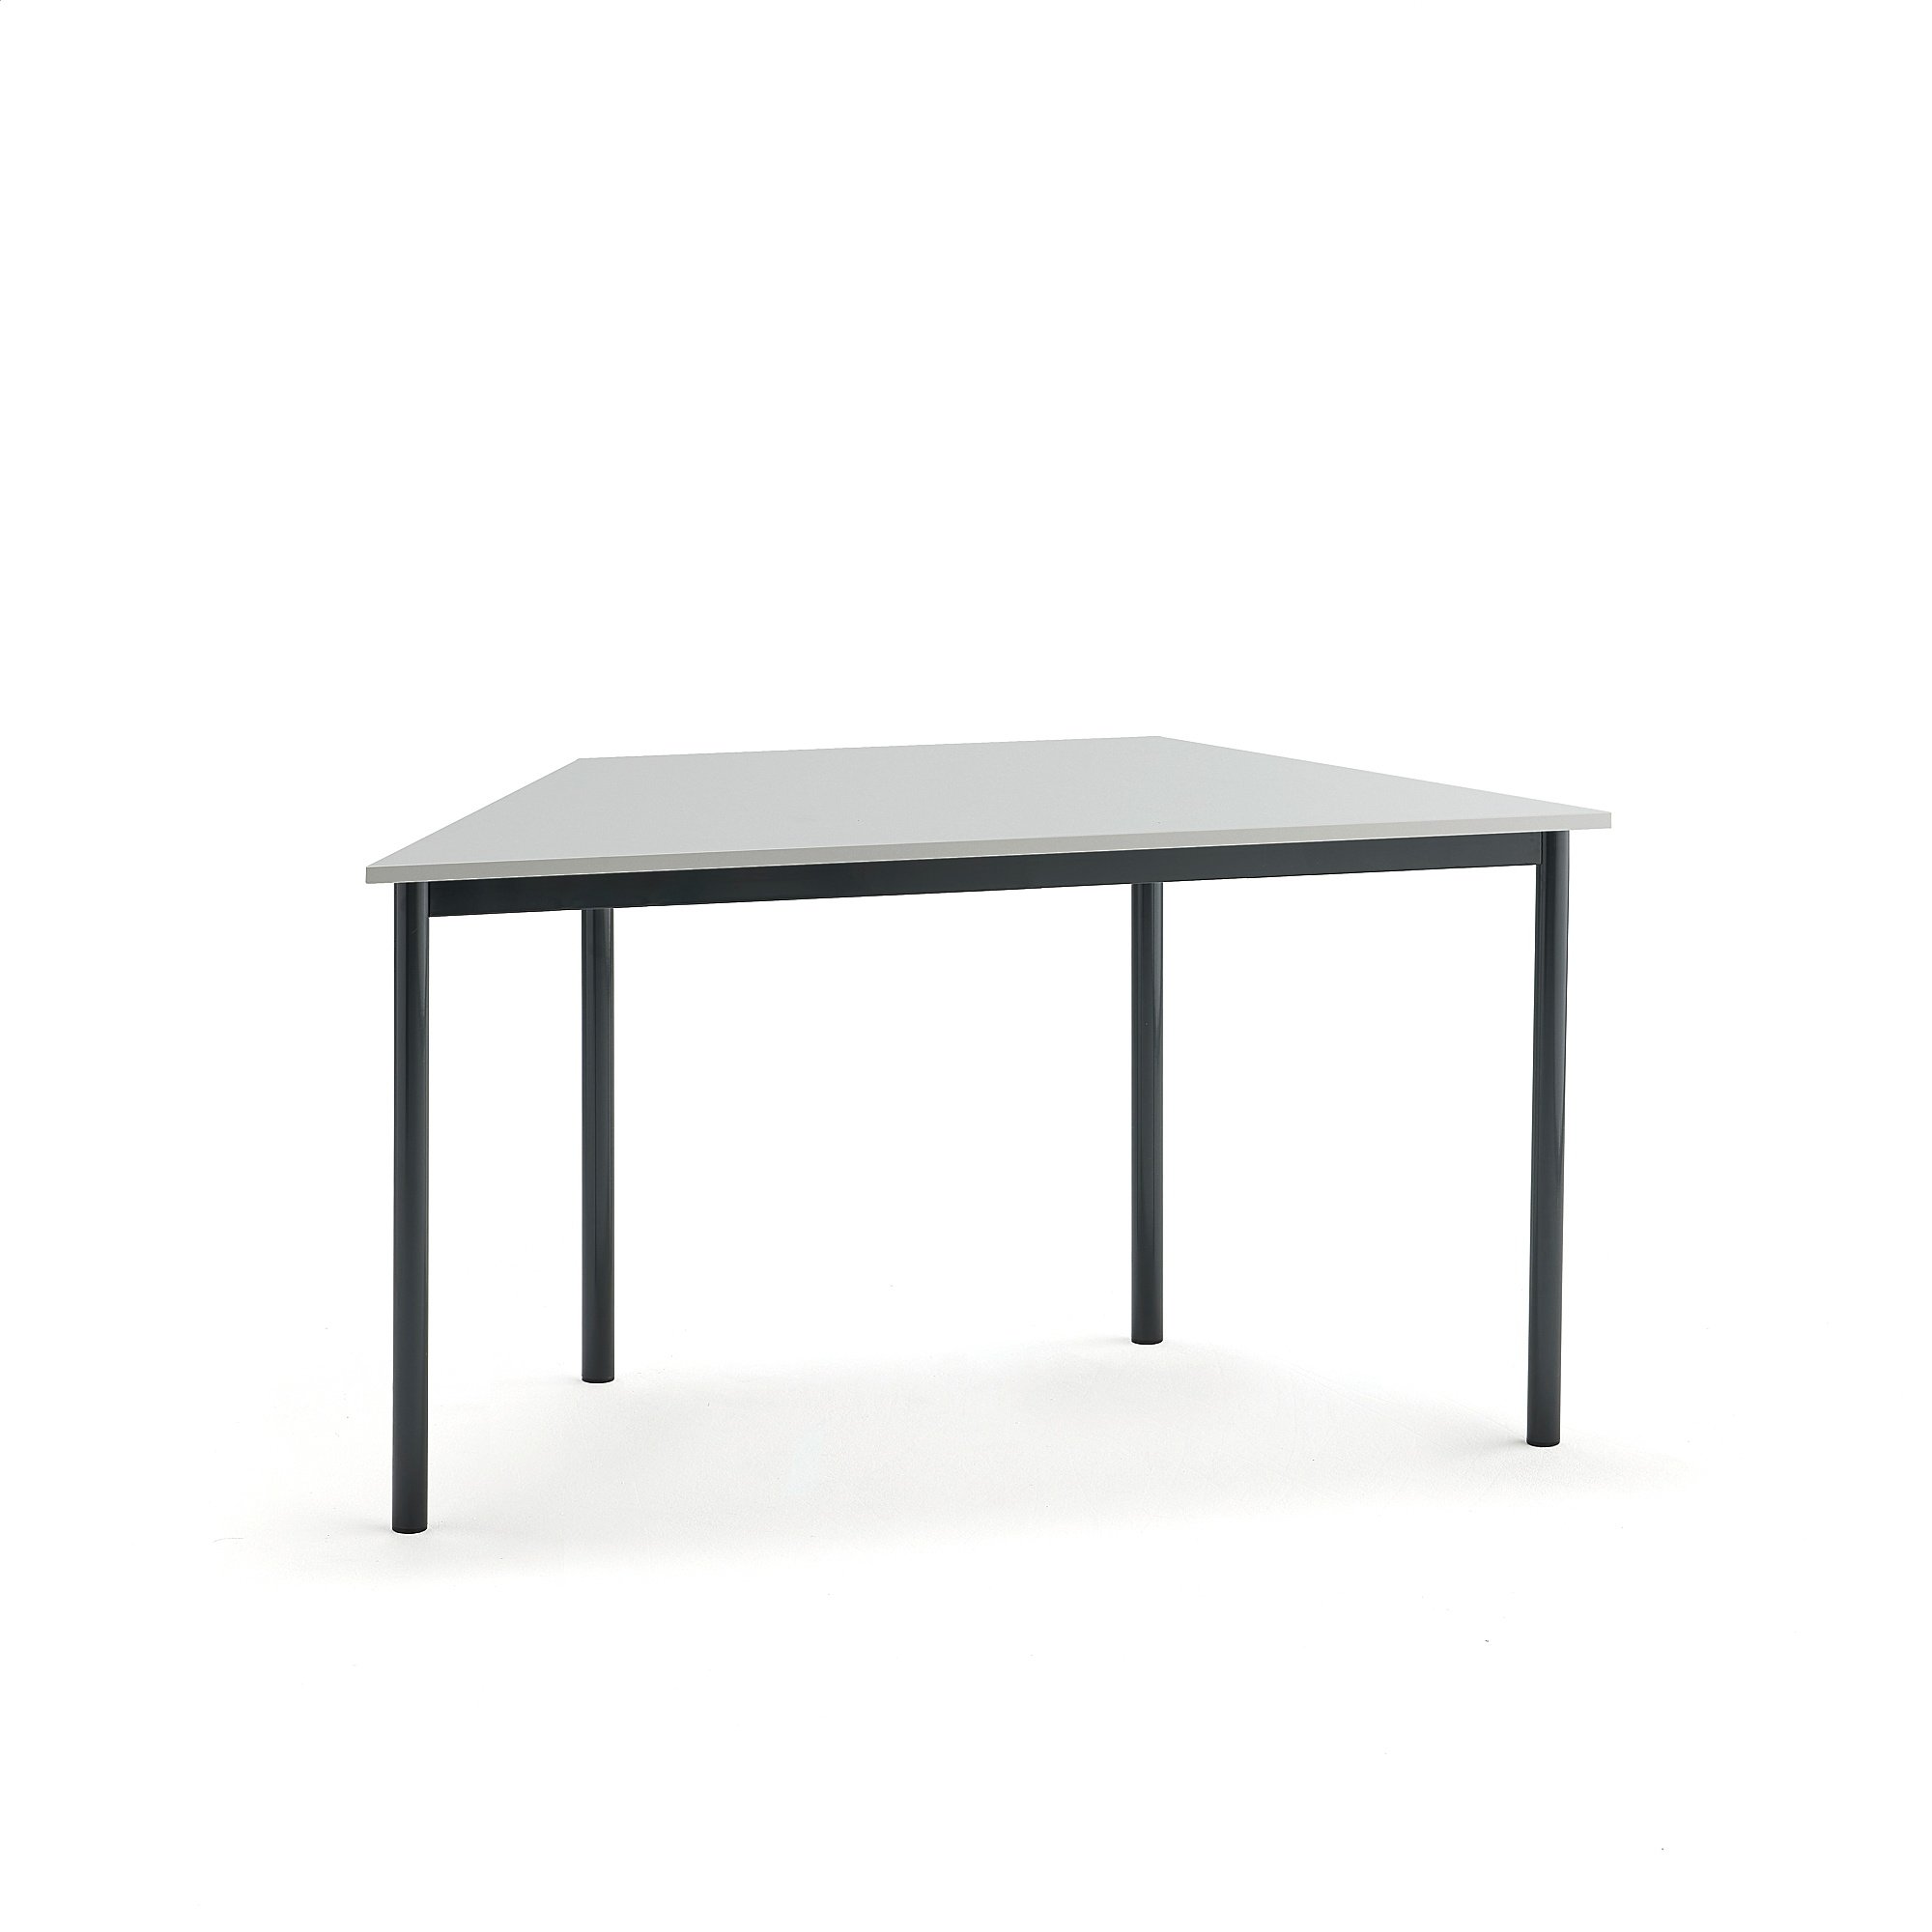 Stůl BORÅS TRAPETS, 1200x600x720 mm, antracitově šedé nohy, HPL deska, šedá